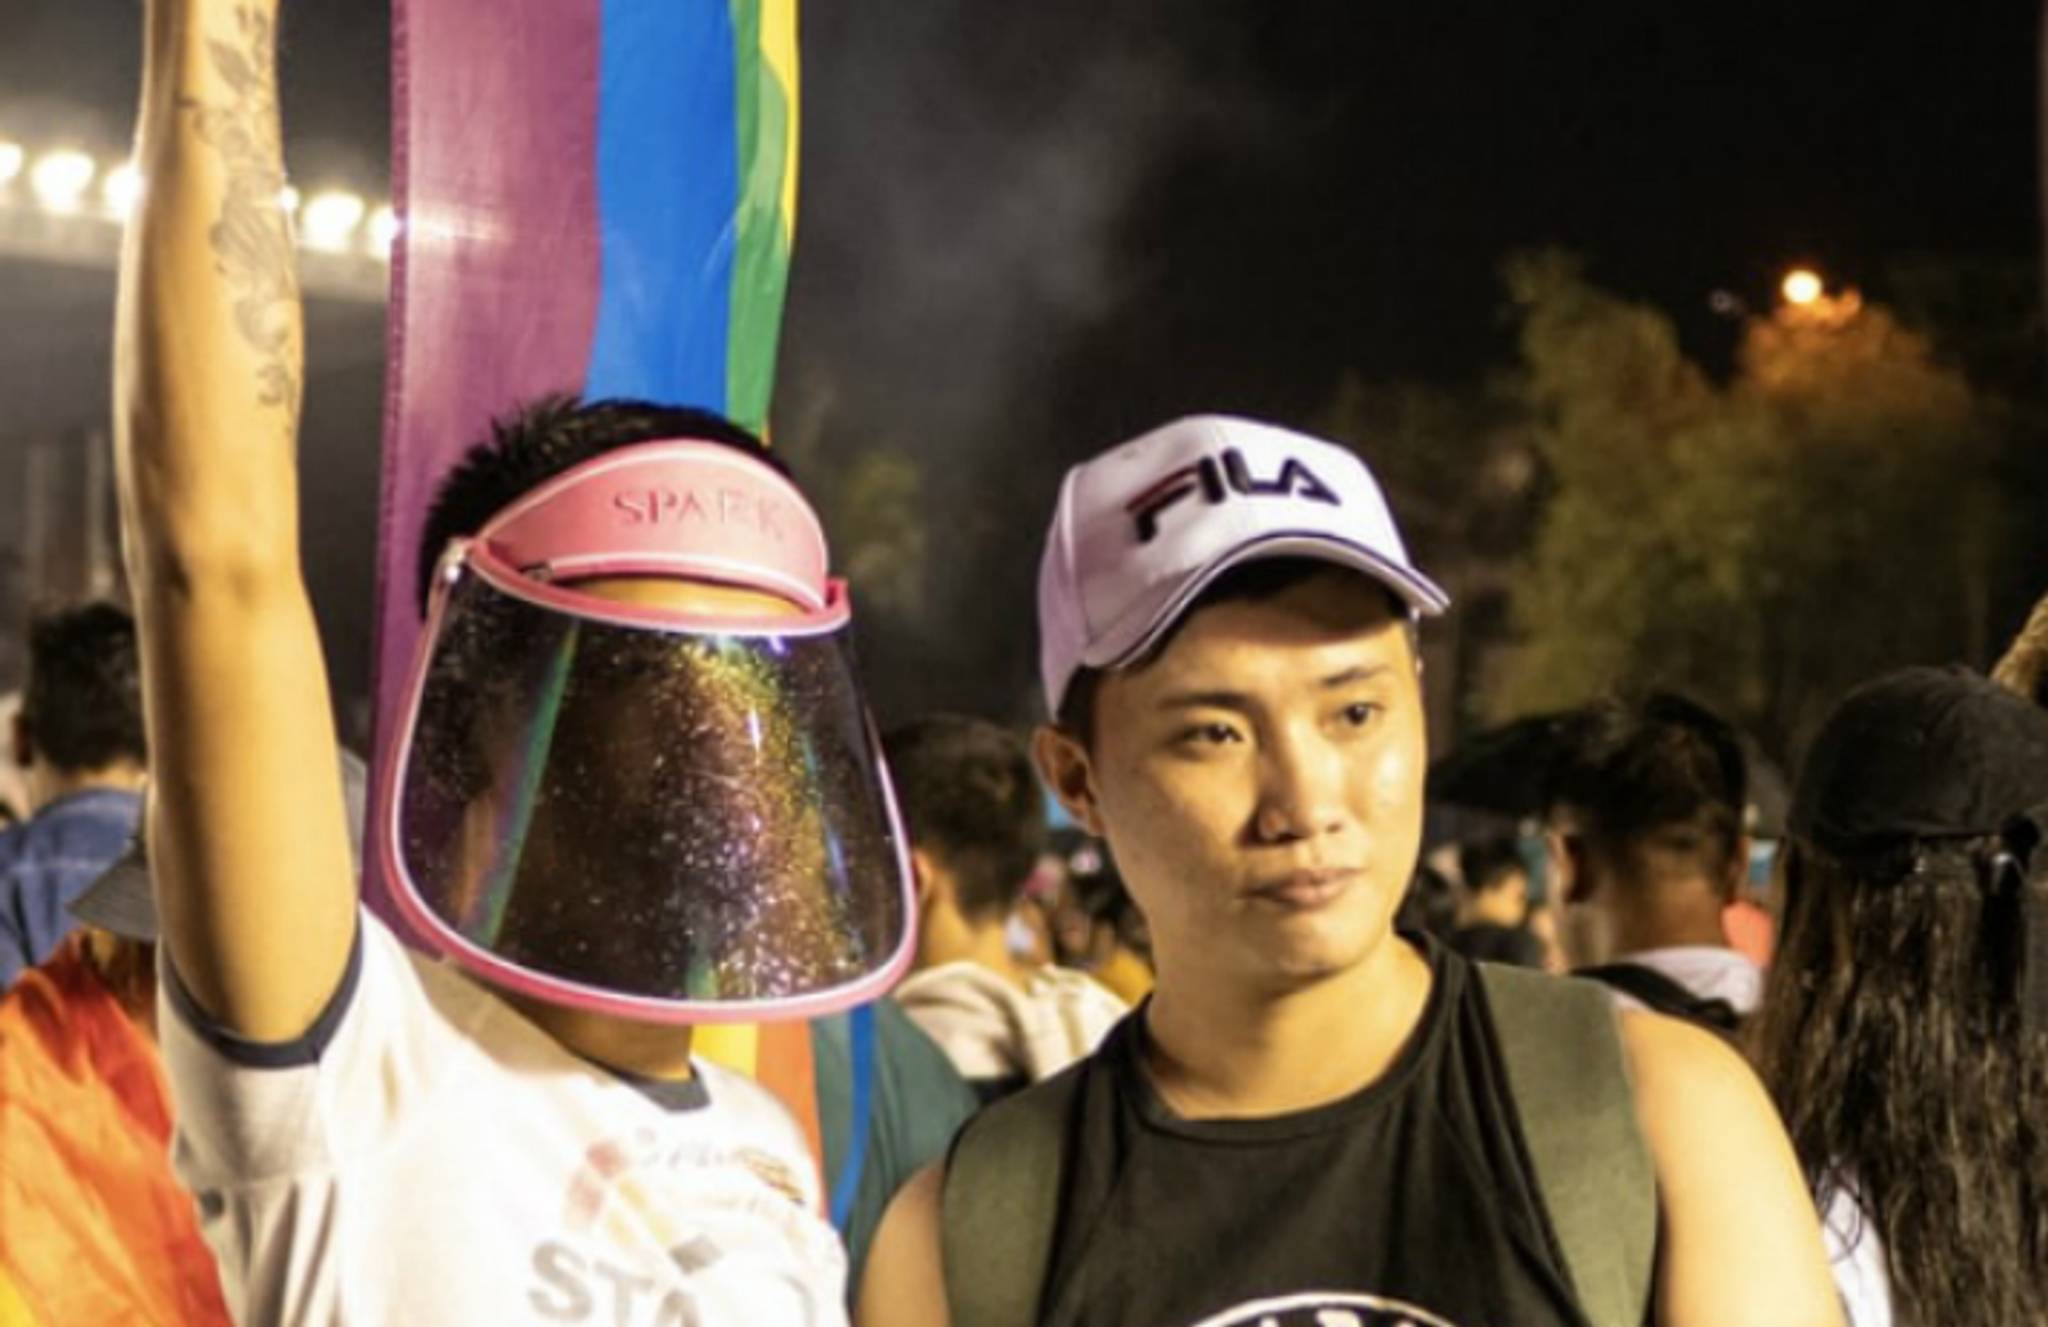 GagaOOLala’s growth shows Asia’s LGBTQ attitude shift